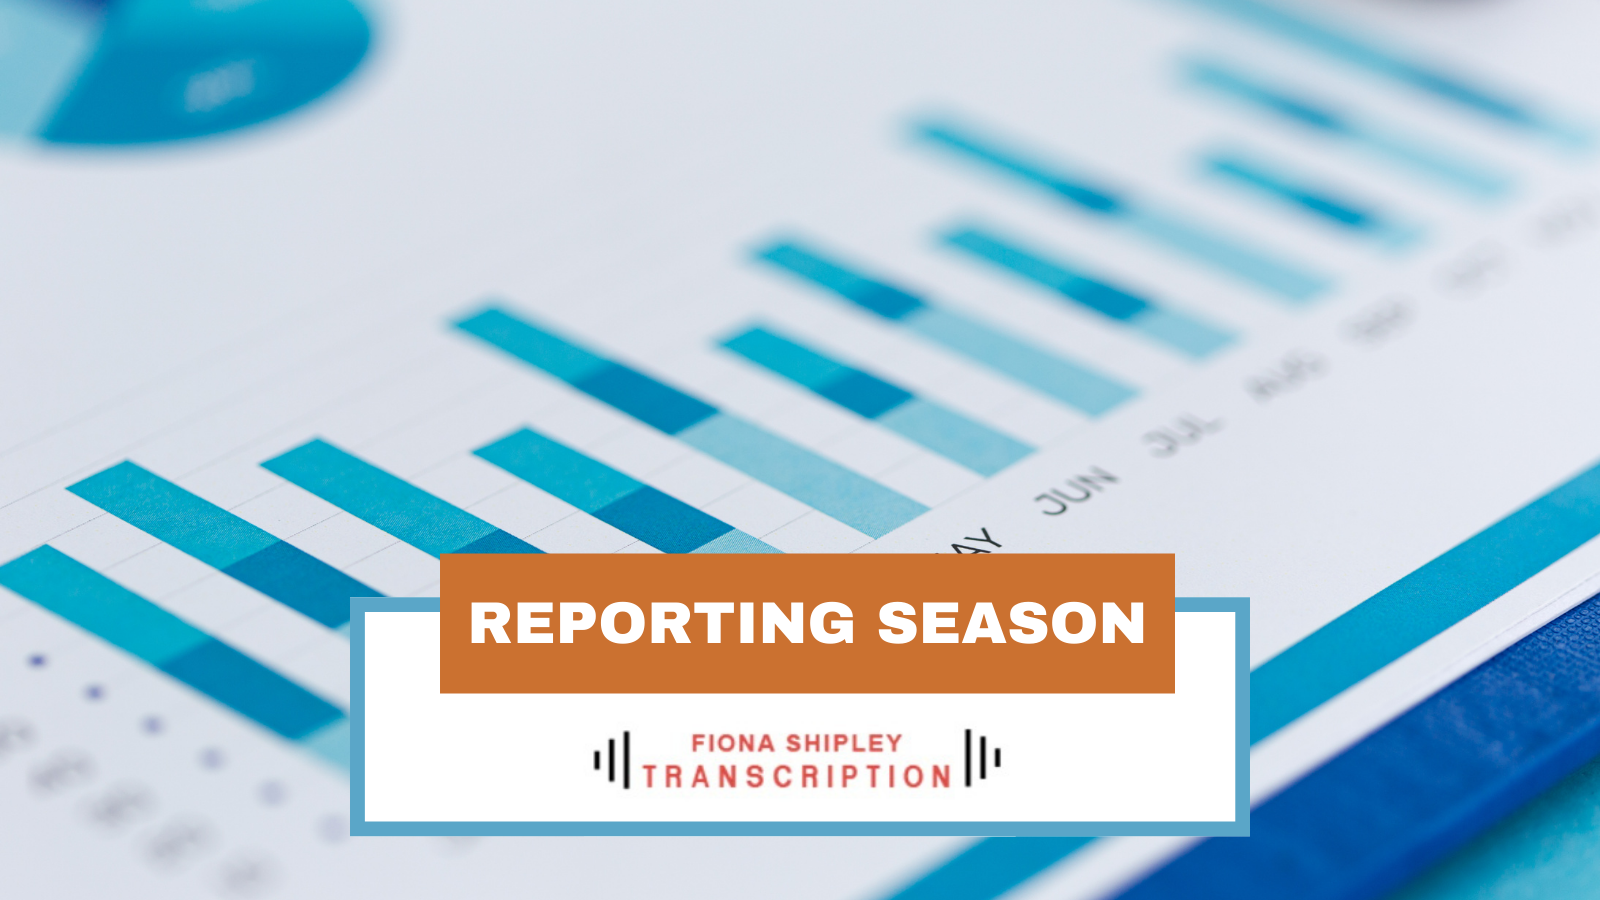 Reporting season